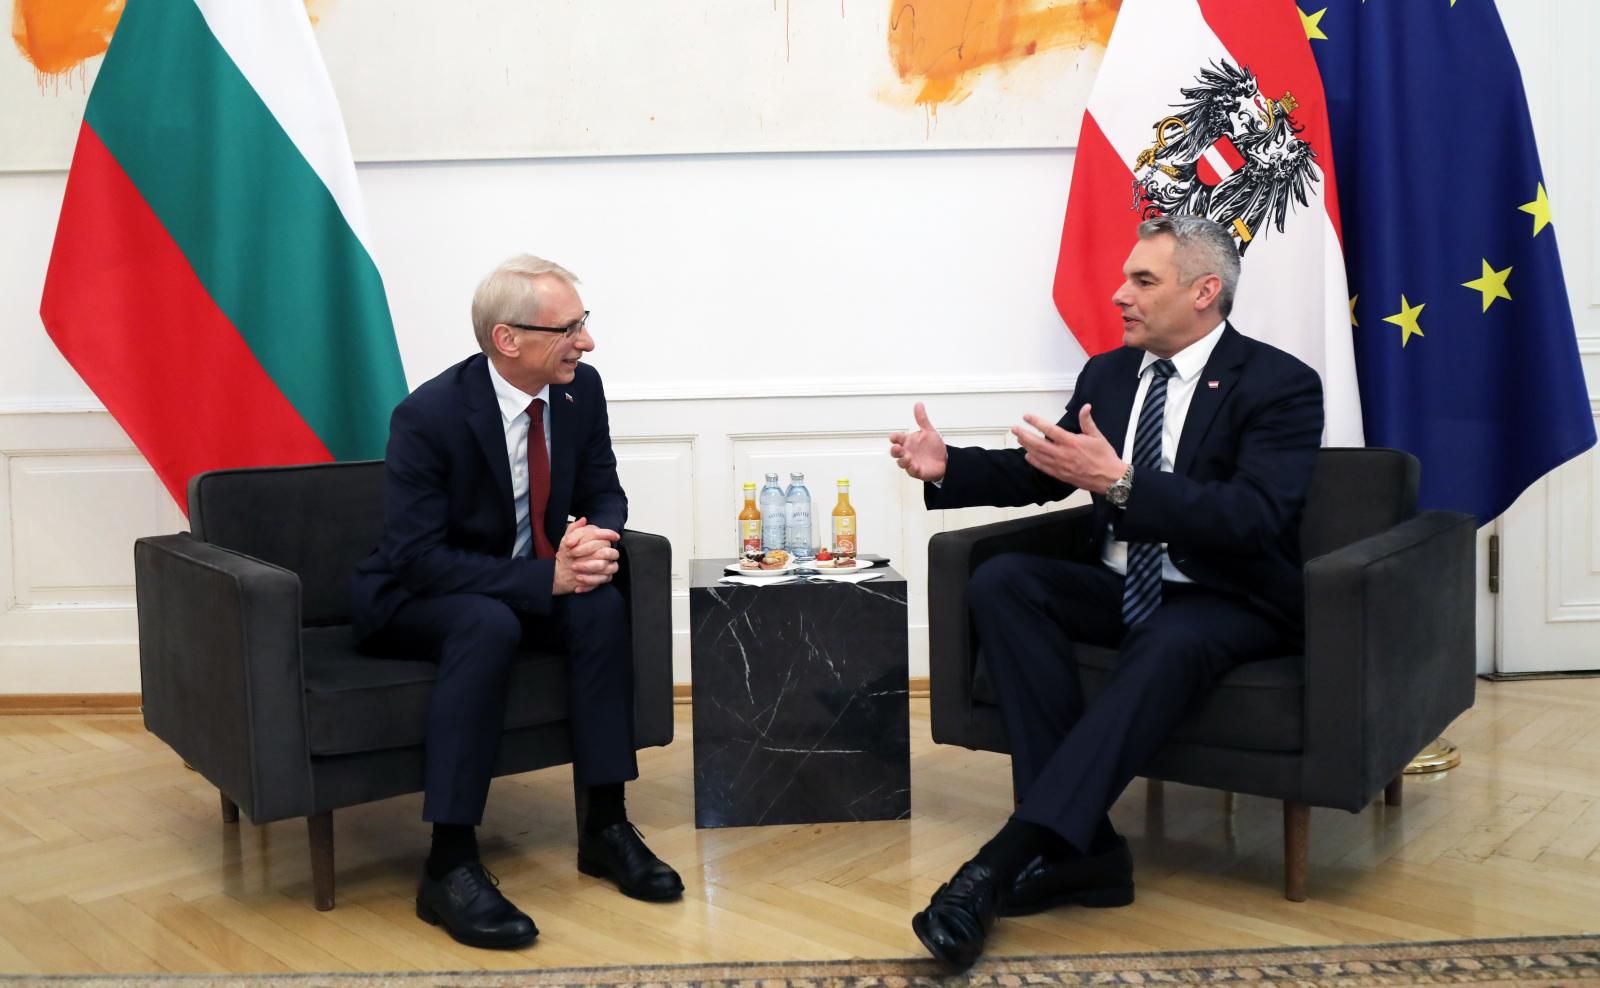 Bulgaristan Başbakanı Denkov, ülkesinin ve Romanya’nın Şengen bölgesine kabul edilmesini istedi